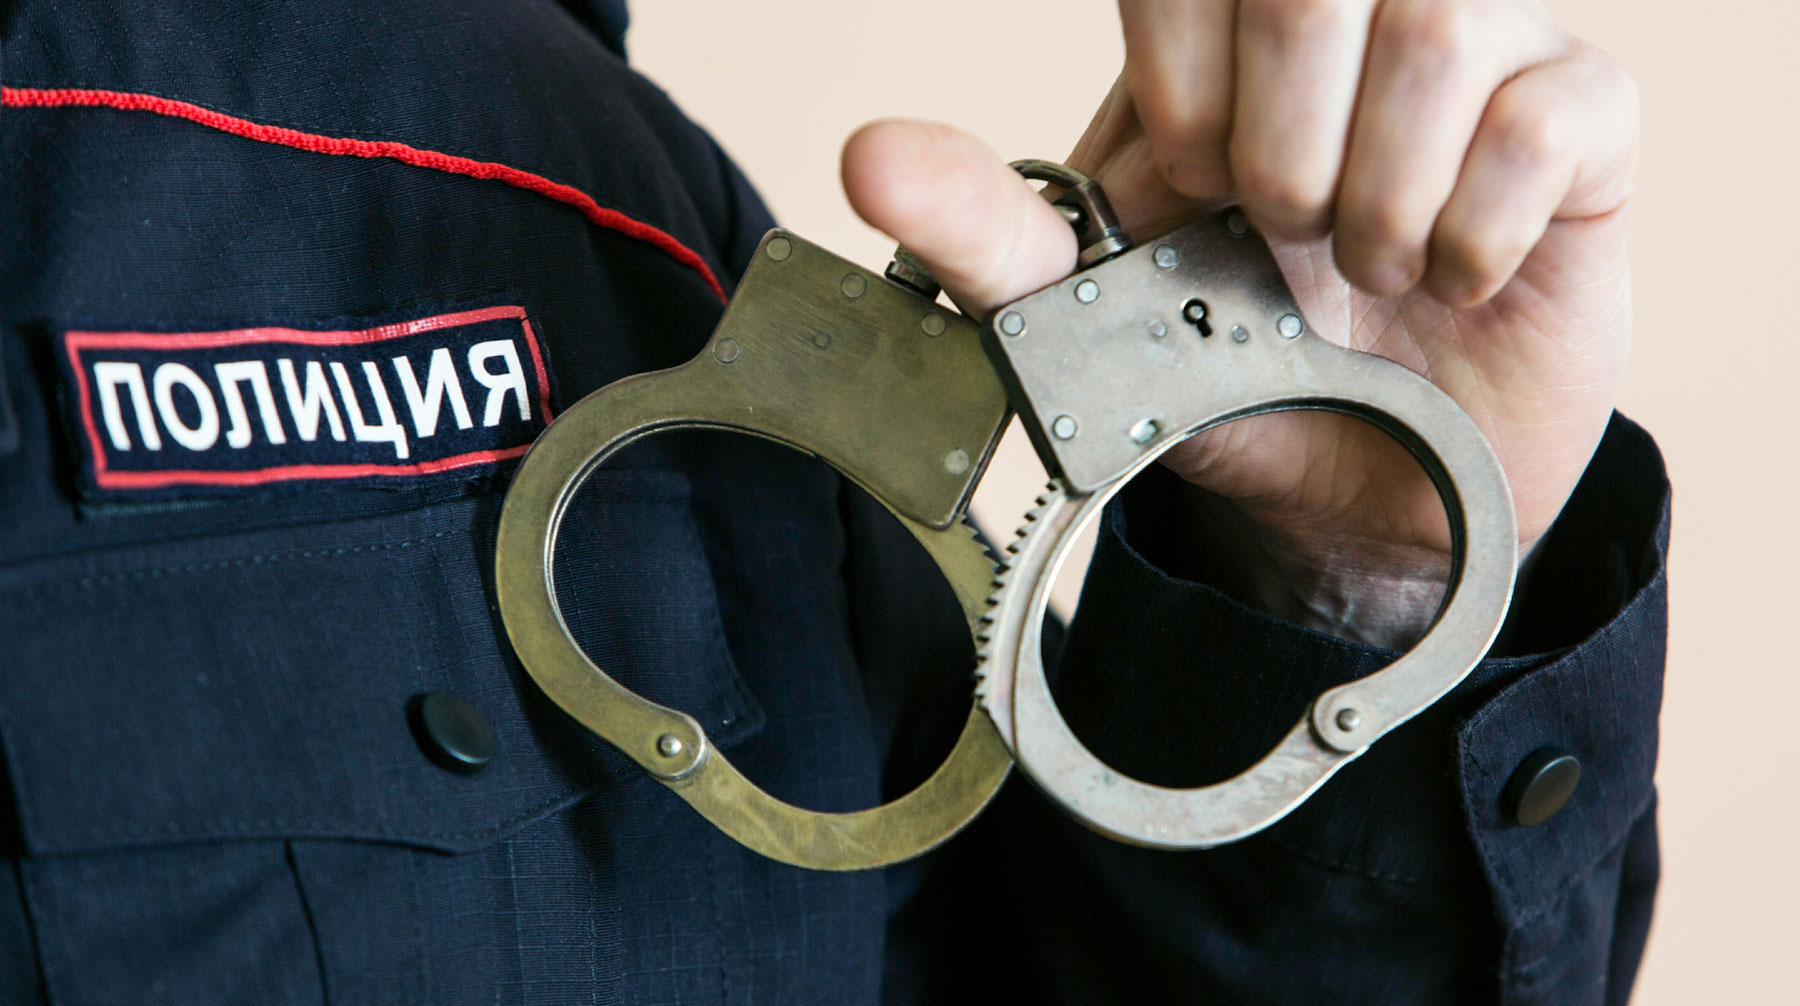 В Иркутской области полицейские сначала избили мужчину, а теперь хотят привлечь его за ложный донос, если он продолжит жаловаться Фото: © GLOBAL LOOK press/Nikolay Gyngazov